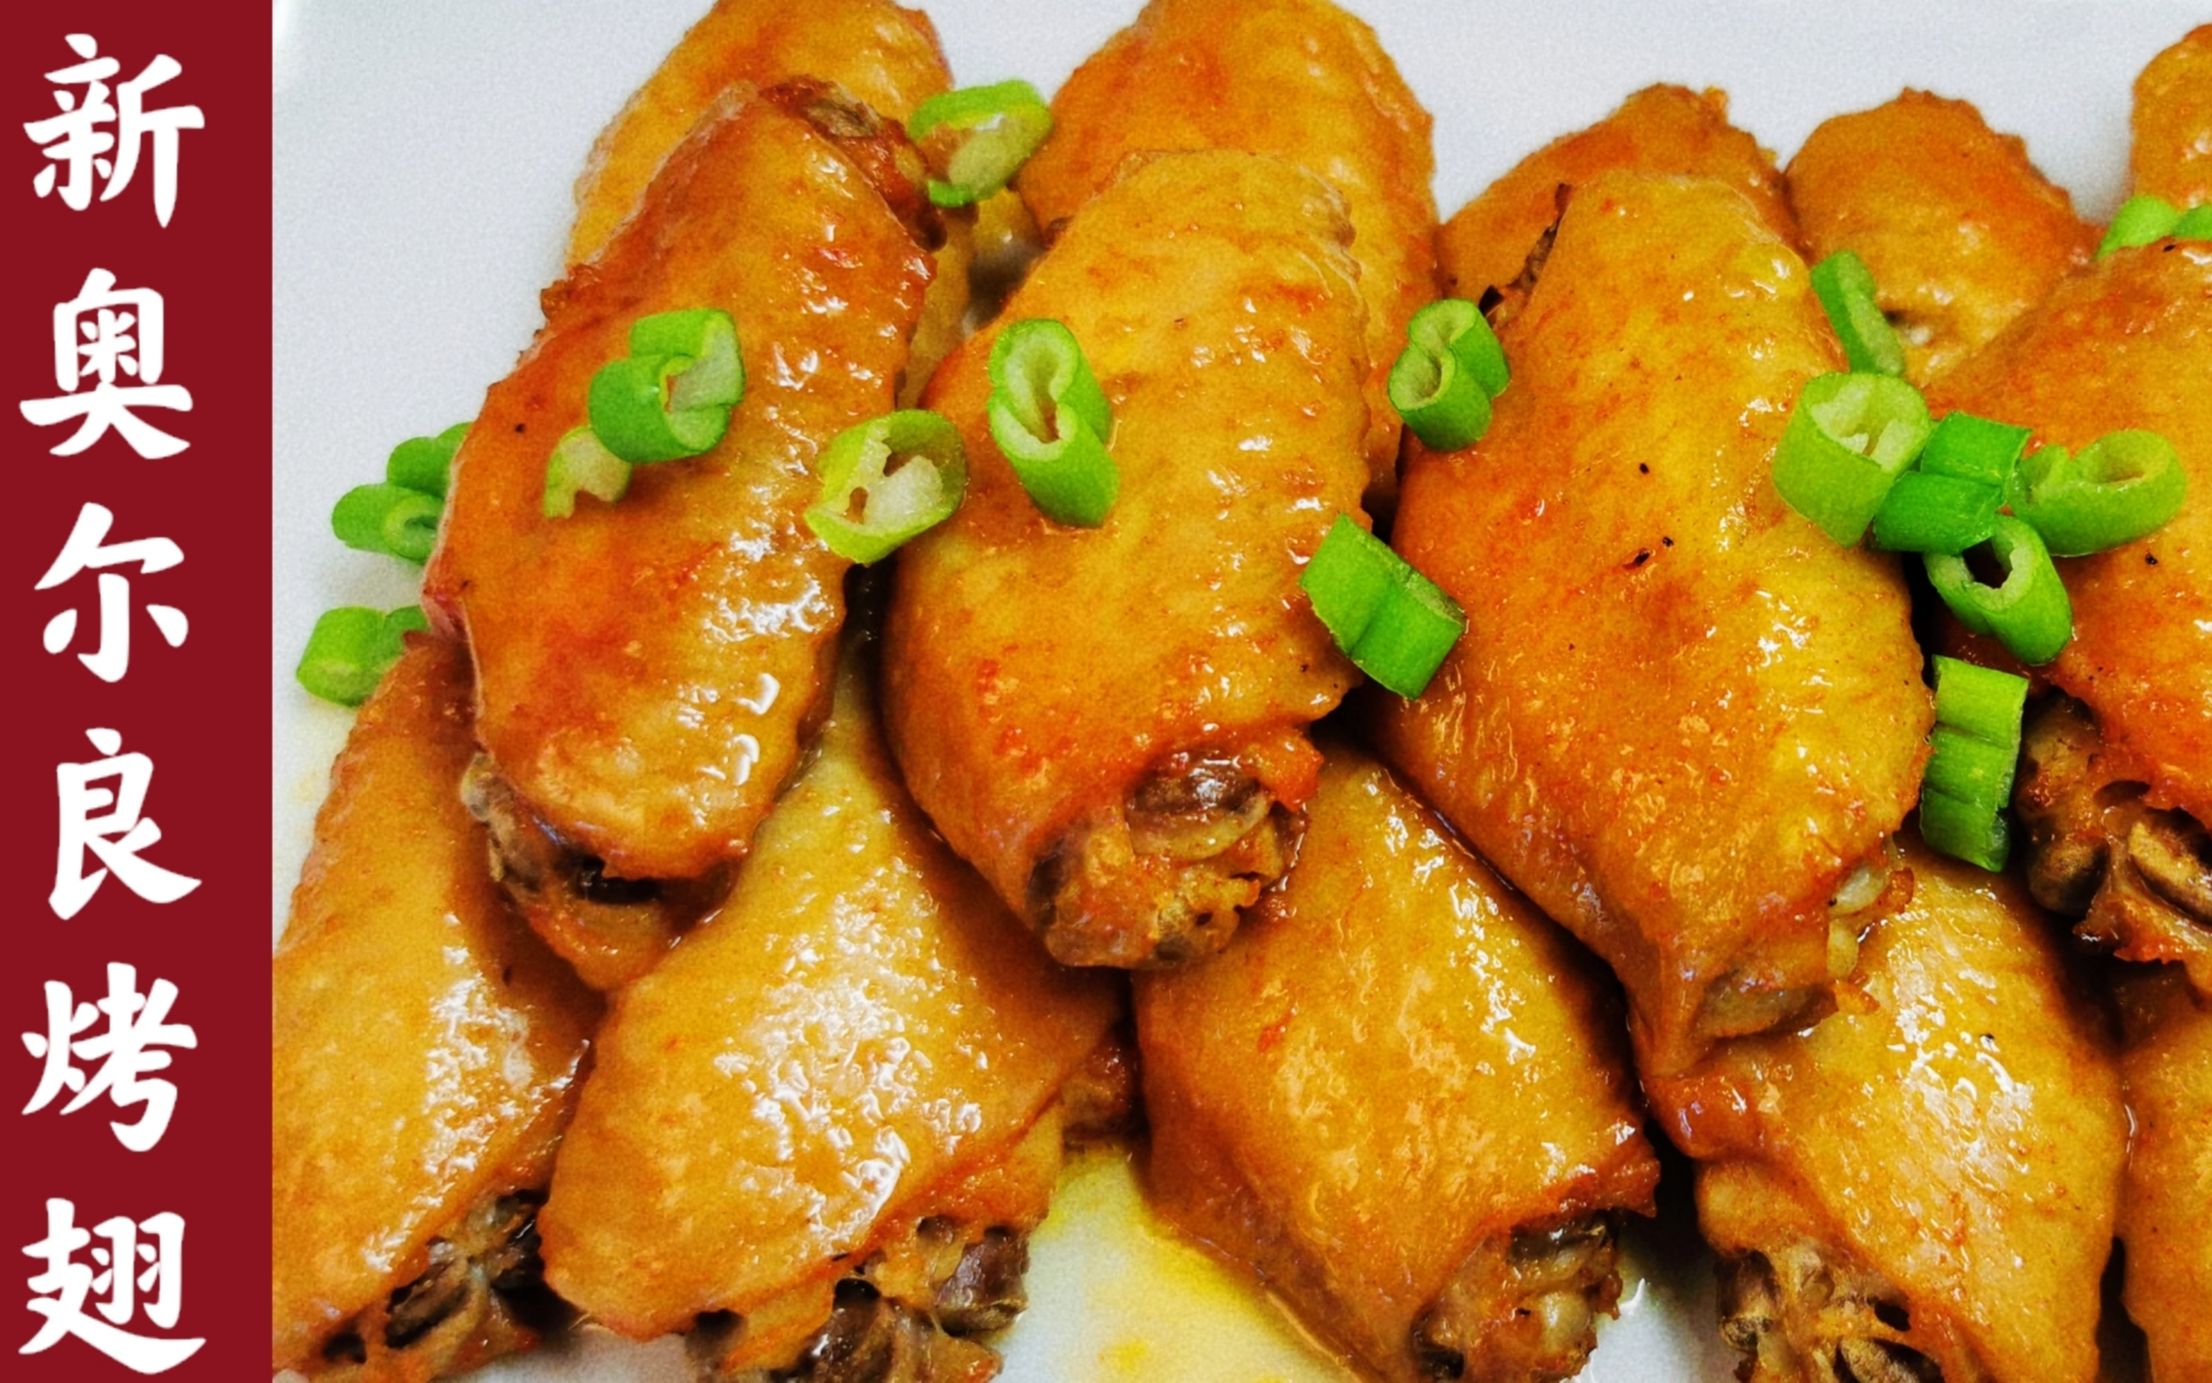 新奥尔良烤翅烤鸡翅本视频用简单的食材烤出色彩艳丽的鲜香诱人的烤翅